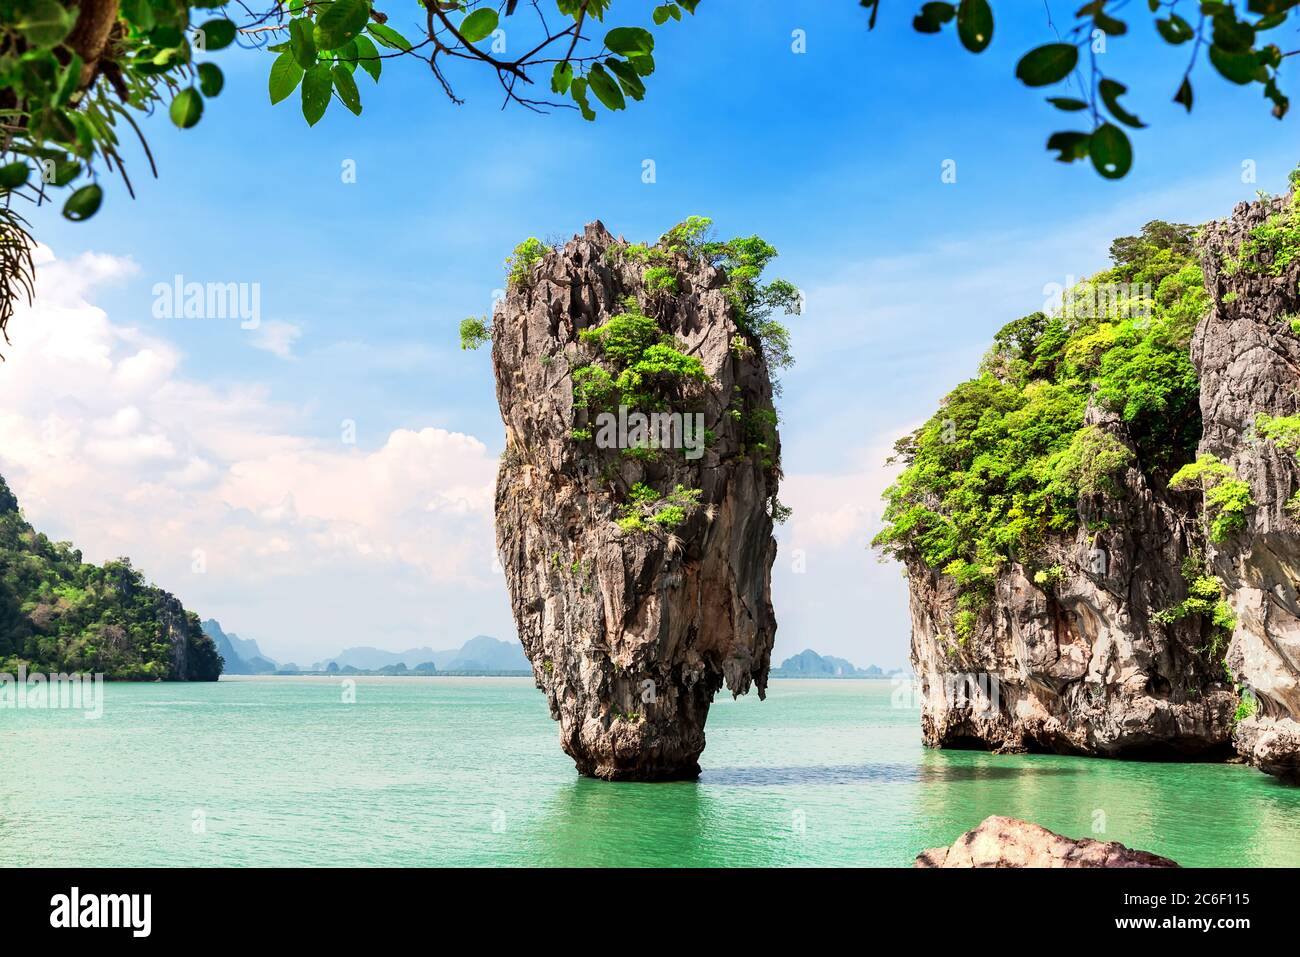 Famosa isola di James Bond vicino a Phuket in Thailandia. Foto di viaggio dell'isola di James Bond nella baia di Phang Nga. Luogo famoso tailandese. Foto Stock